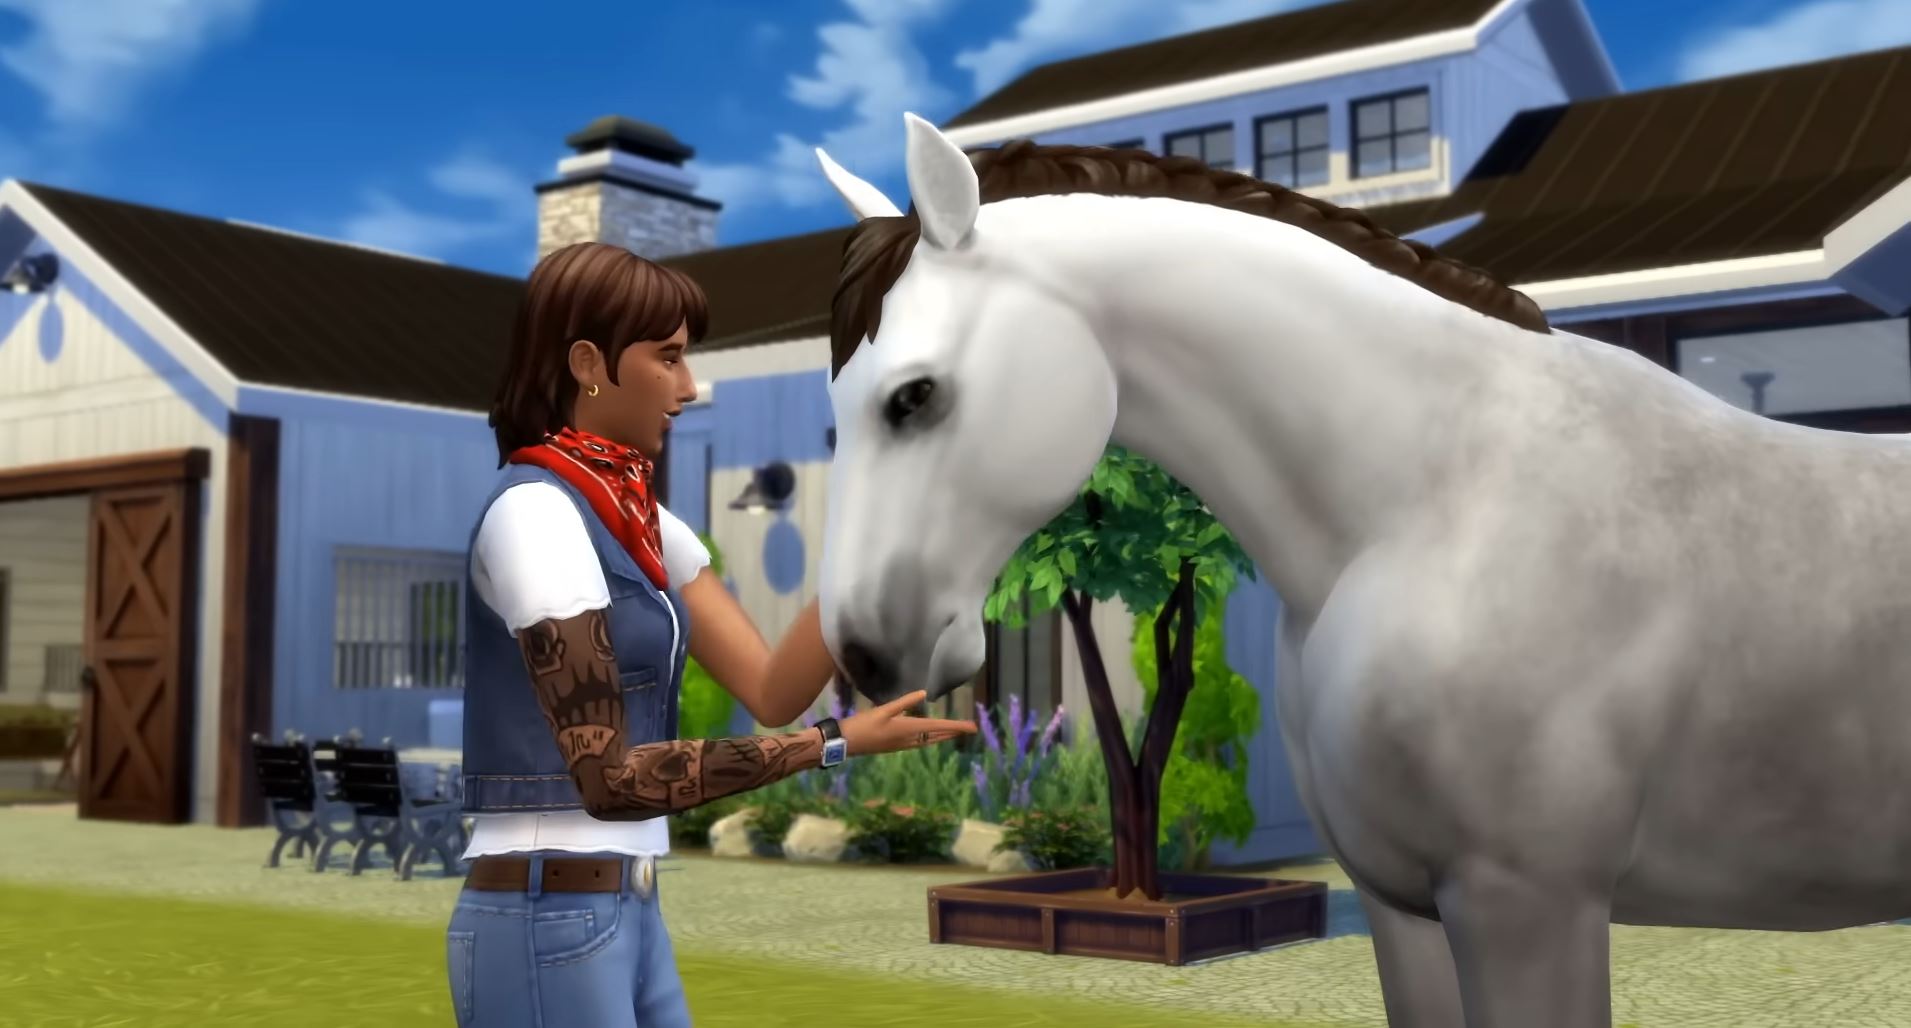 20 июля к The Sims 4 выйдет аддон "Конное ранчо" (Horse Ranch)